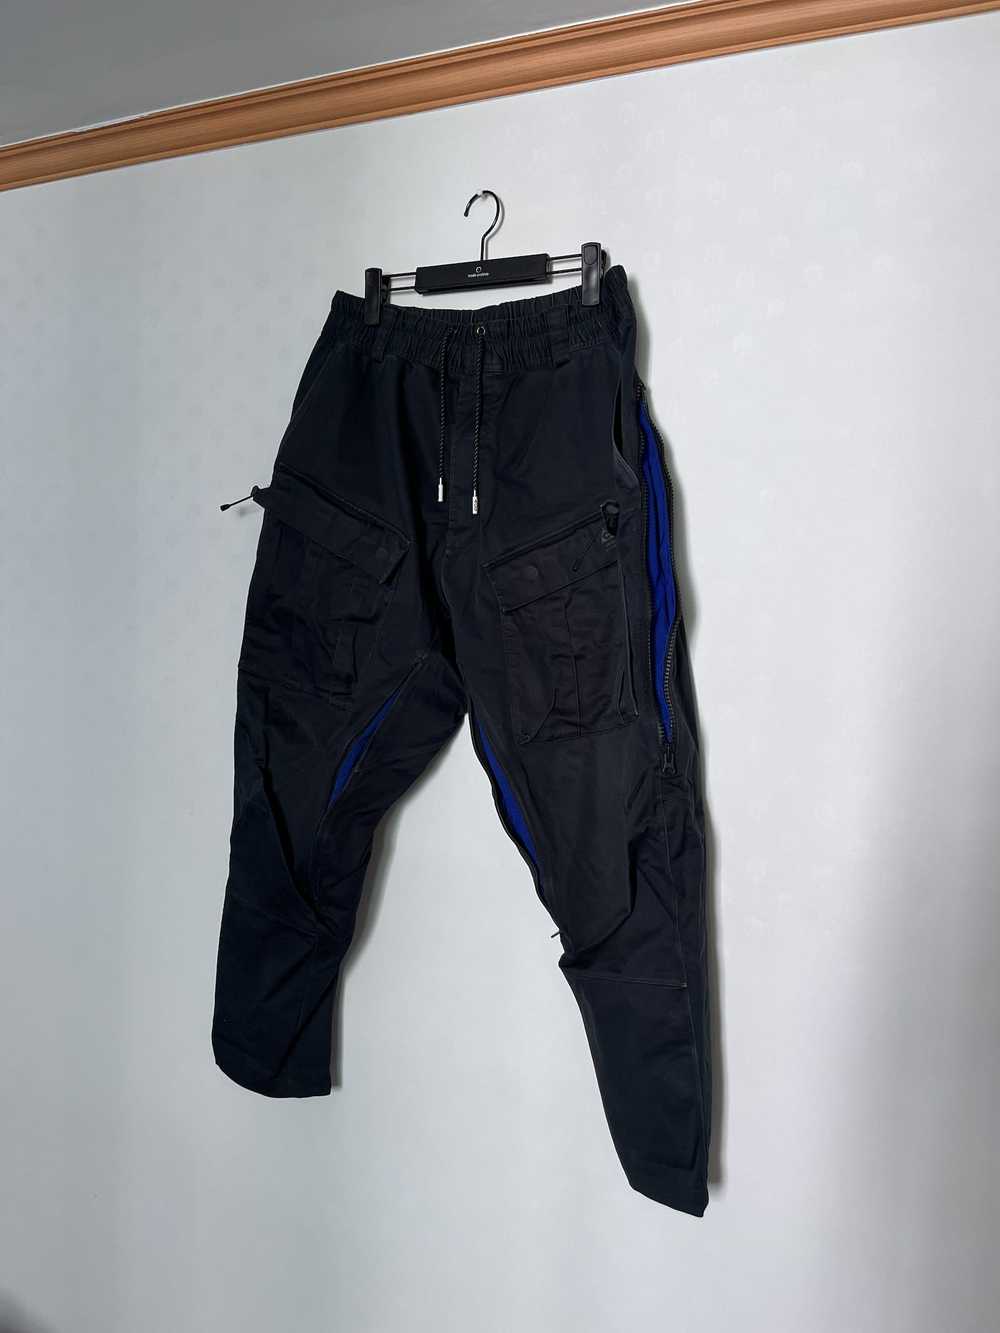 Nike ACG nikelab acg acronym cargo pants - image 3